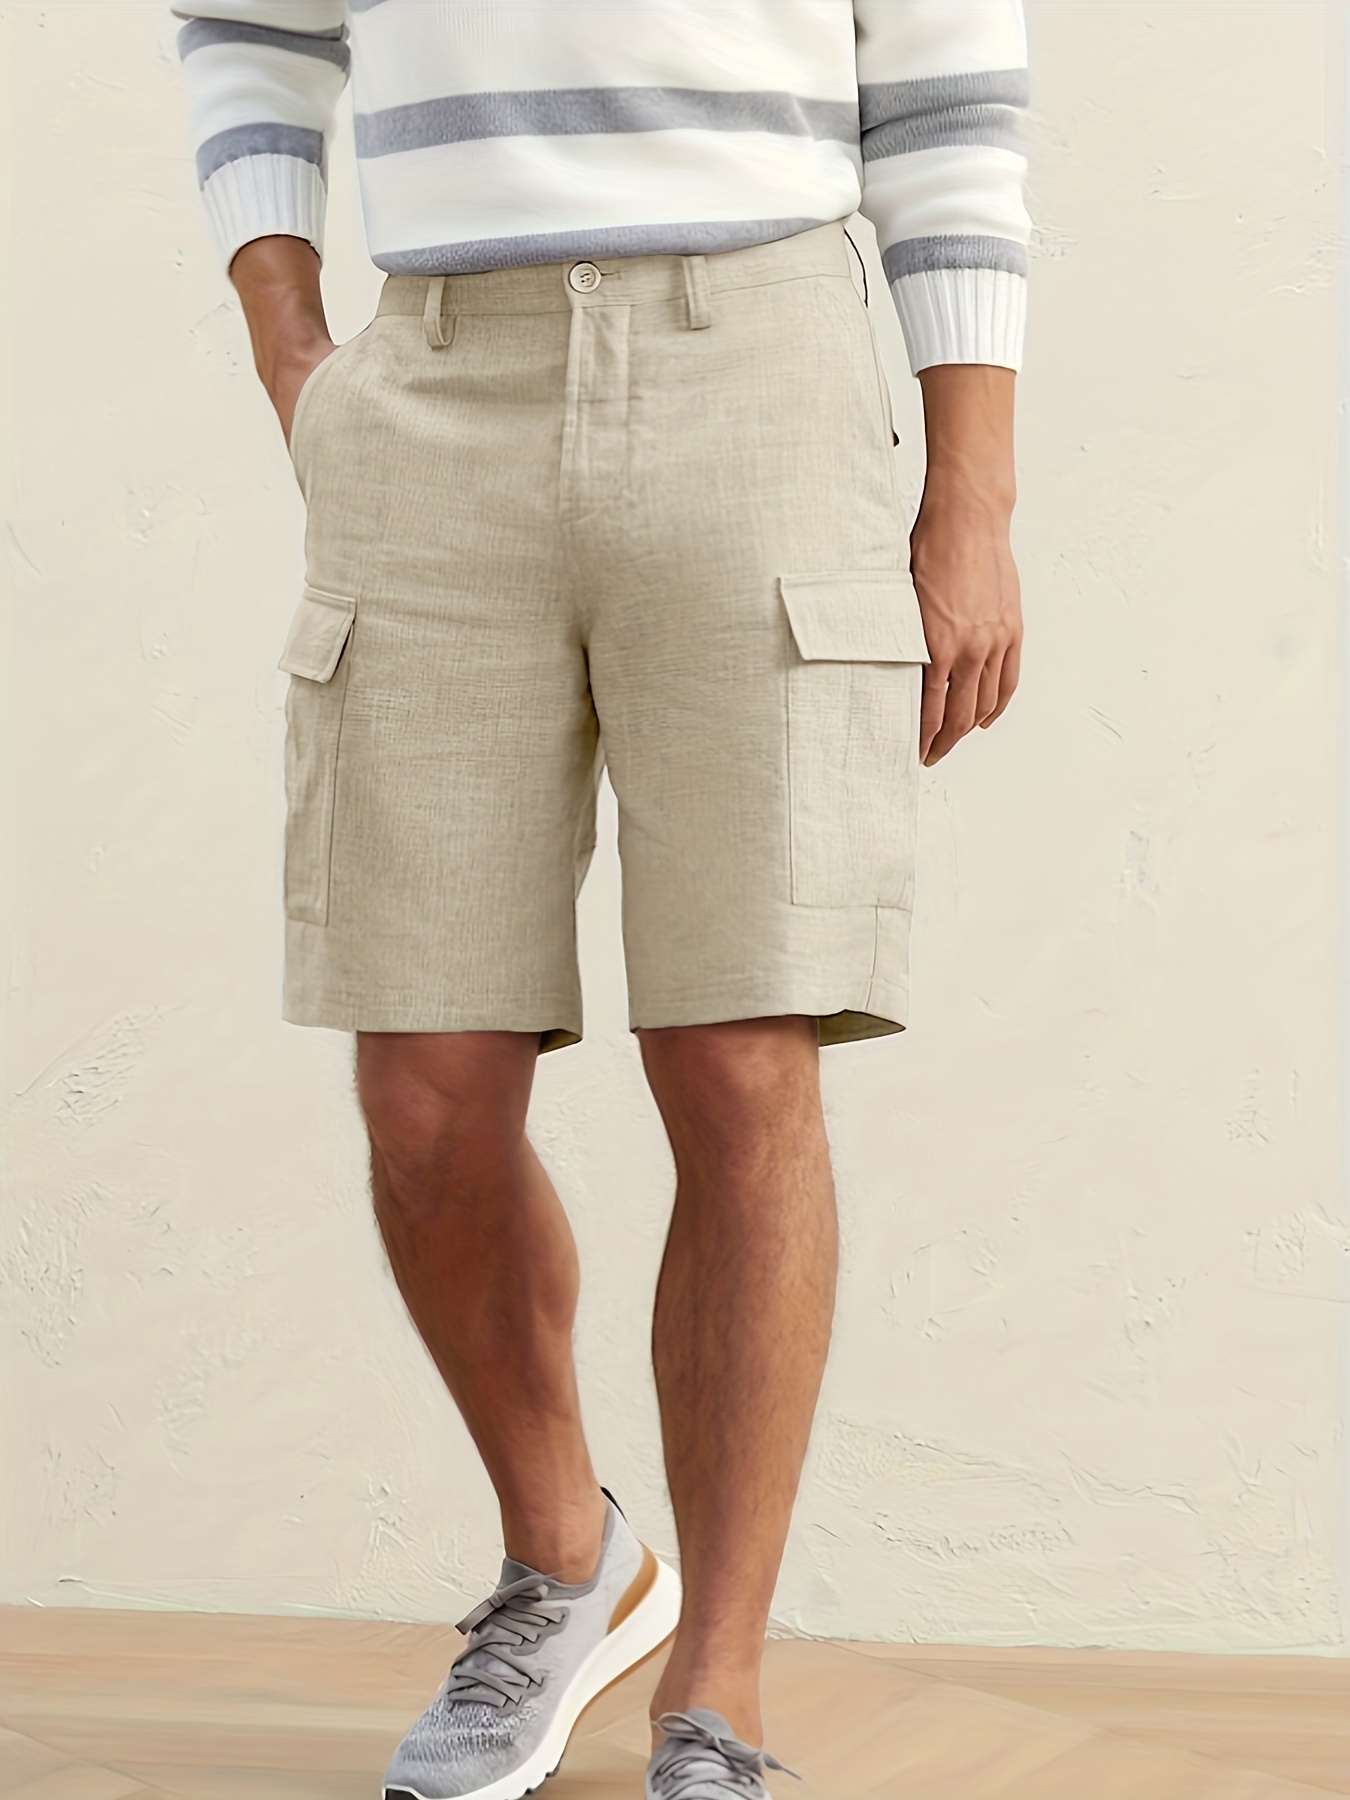 Slim Fit Slant Pocket Elegant Dress Pants, Men's Semi Formal Slightly  Stretch Trousers For Spring Summer Banquet Party Dinner